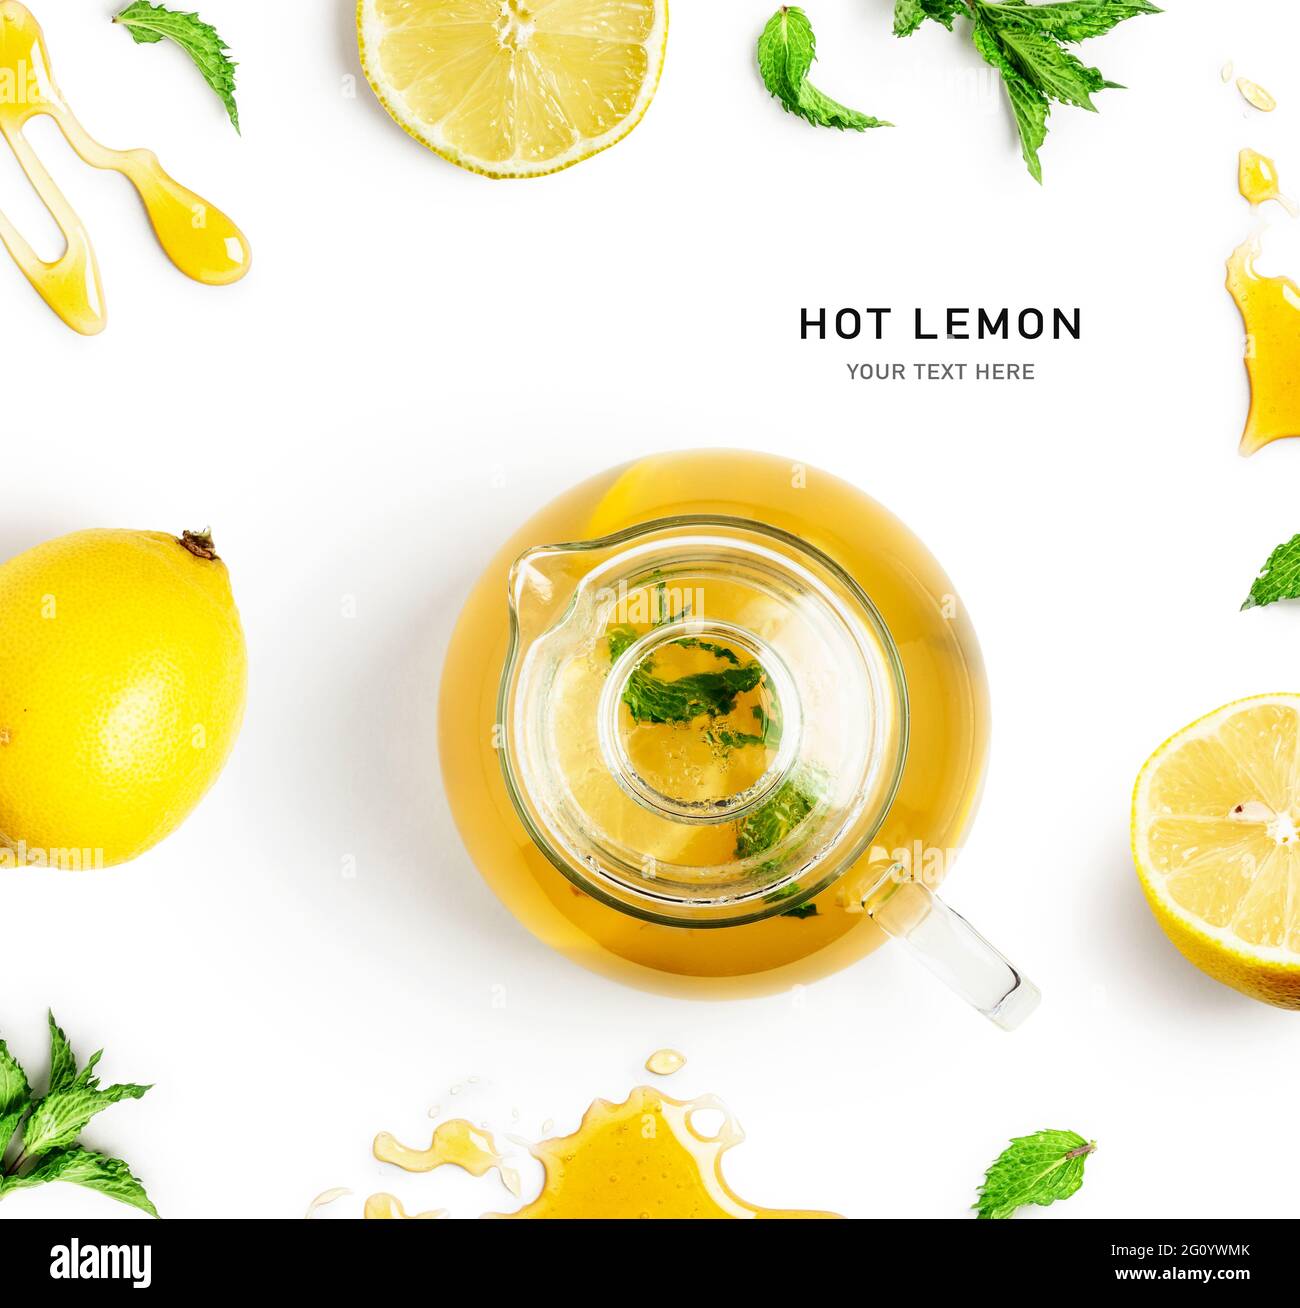 Limón caliente. Tetera con menta, limón y miel. Ingredientes del té diseño creativo aislado sobre fondo blanco. Concepto de alimentación saludable y remedio casero. Foto de stock